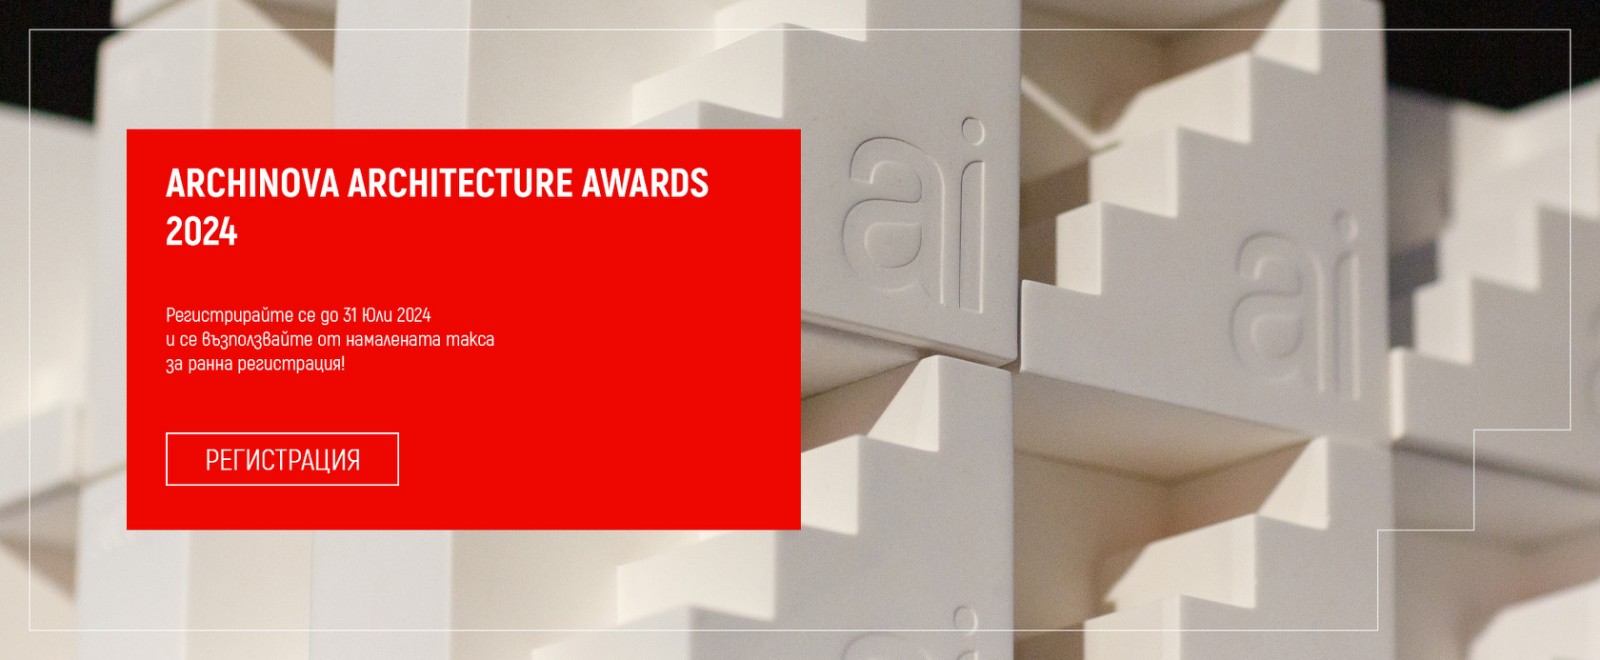 Стартира архитектурен конкурс ARCHINOVA ARCHITECTURE AWARDS 2024